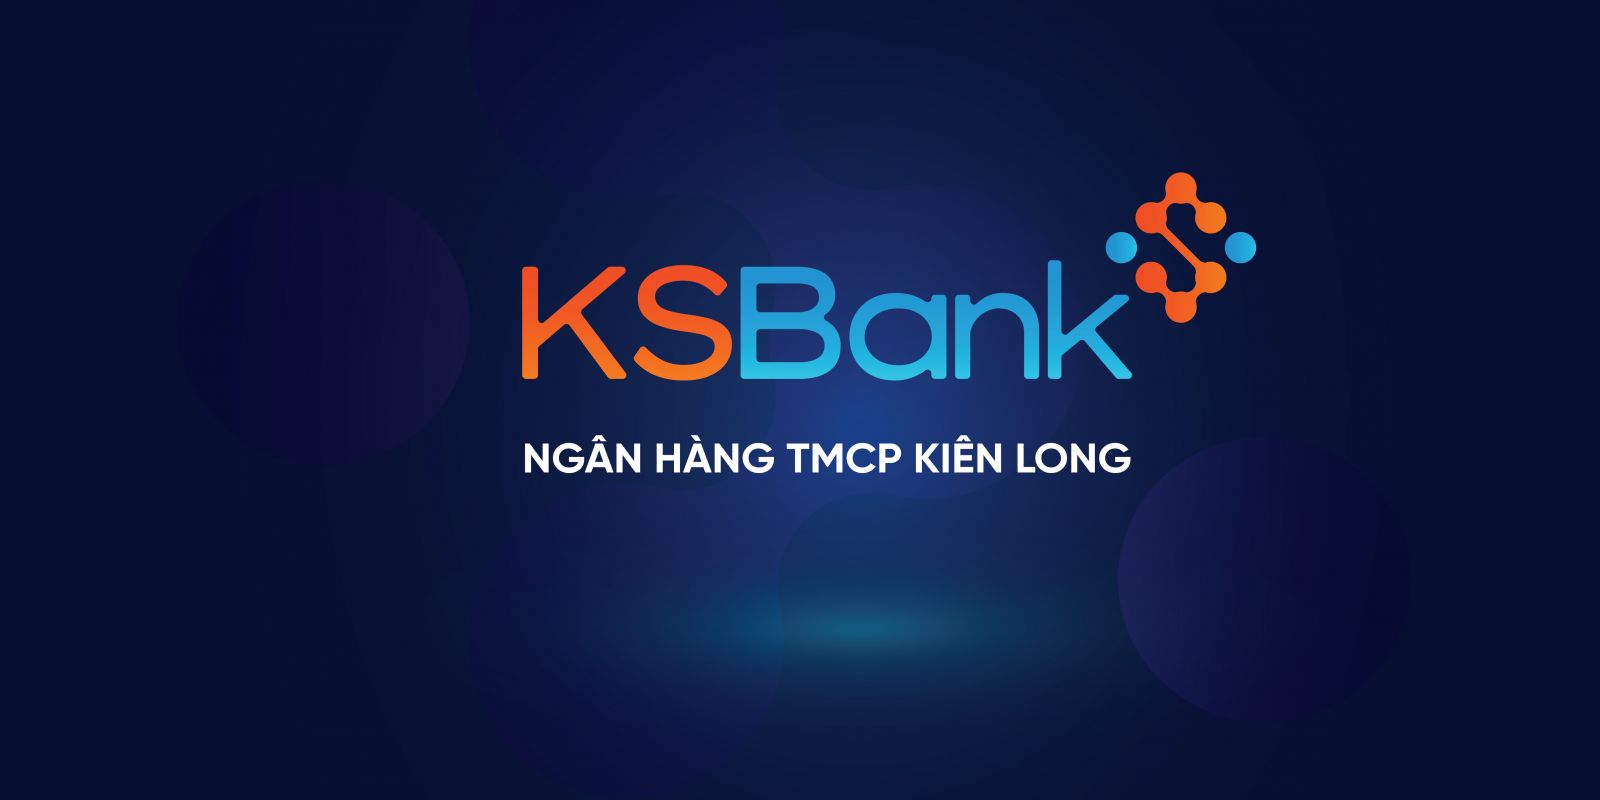 Sau khi được NHNN Việt Nam phê duyệt, KSBank chính thức trở thành tên gọi mới được bổ sung của Ngân hàng TMCP Kiên Long